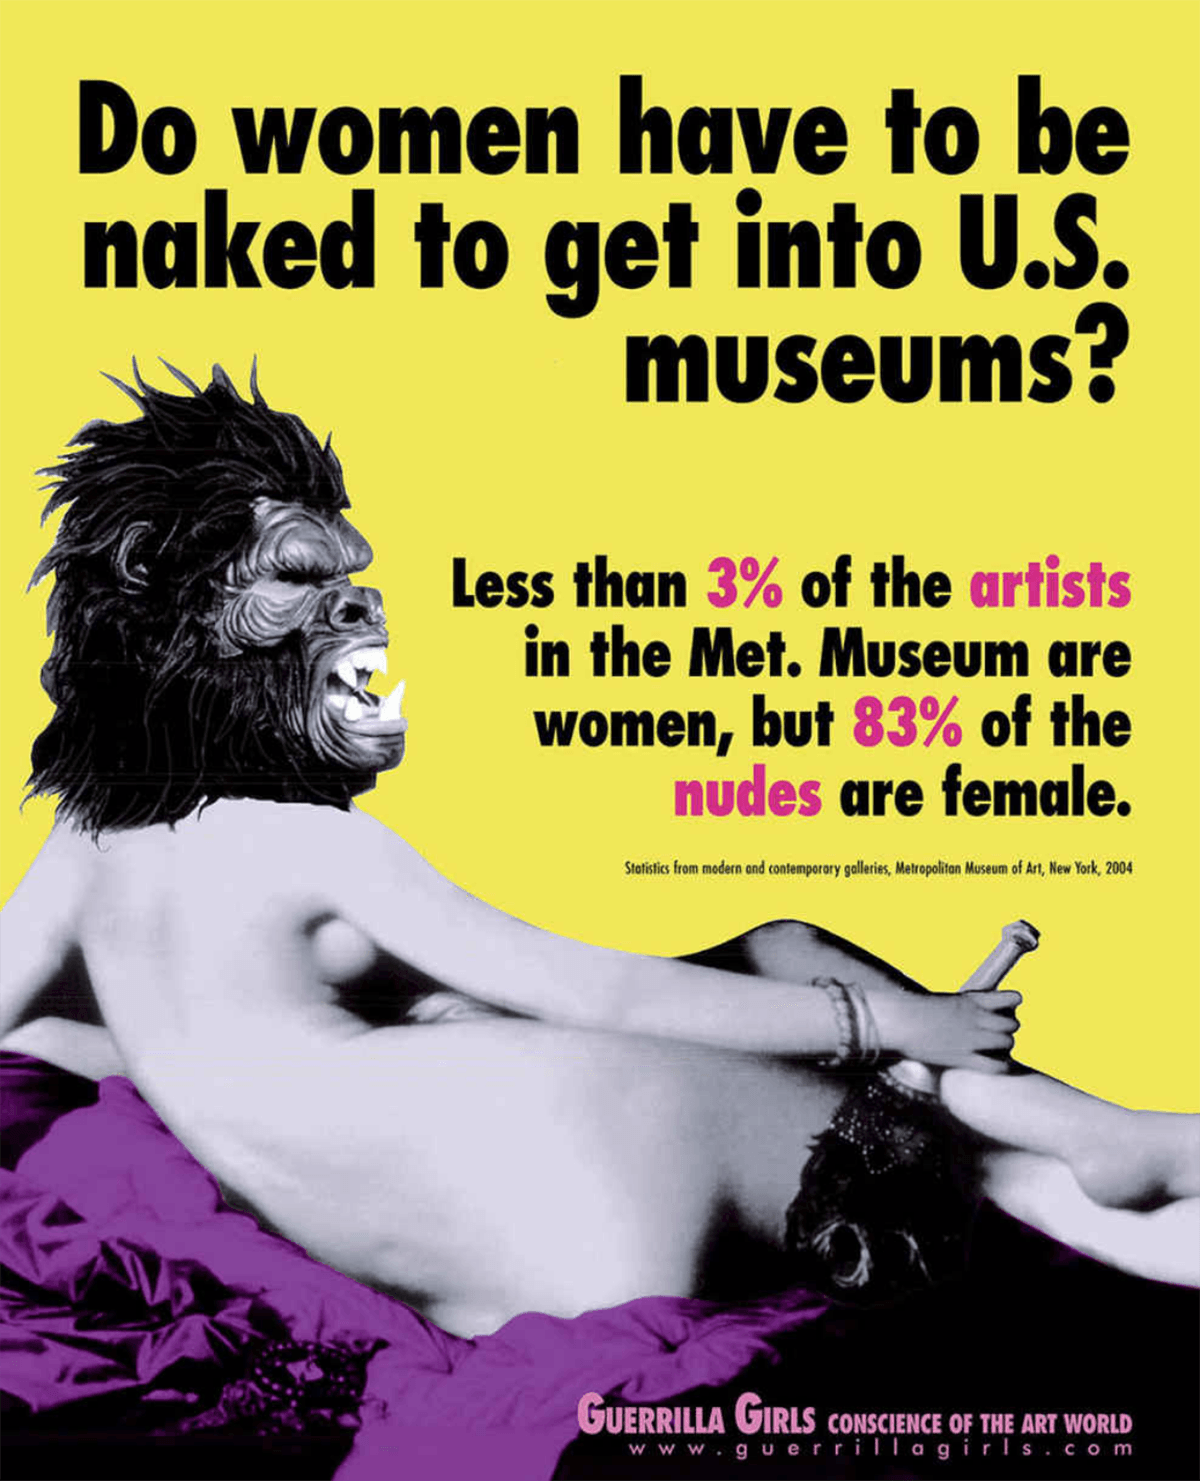 Cartaz de 1985 das Guerrilla Girls, sobre a ausência de obras de arte feitas por mulheres nos museus dos Estados Unidos.